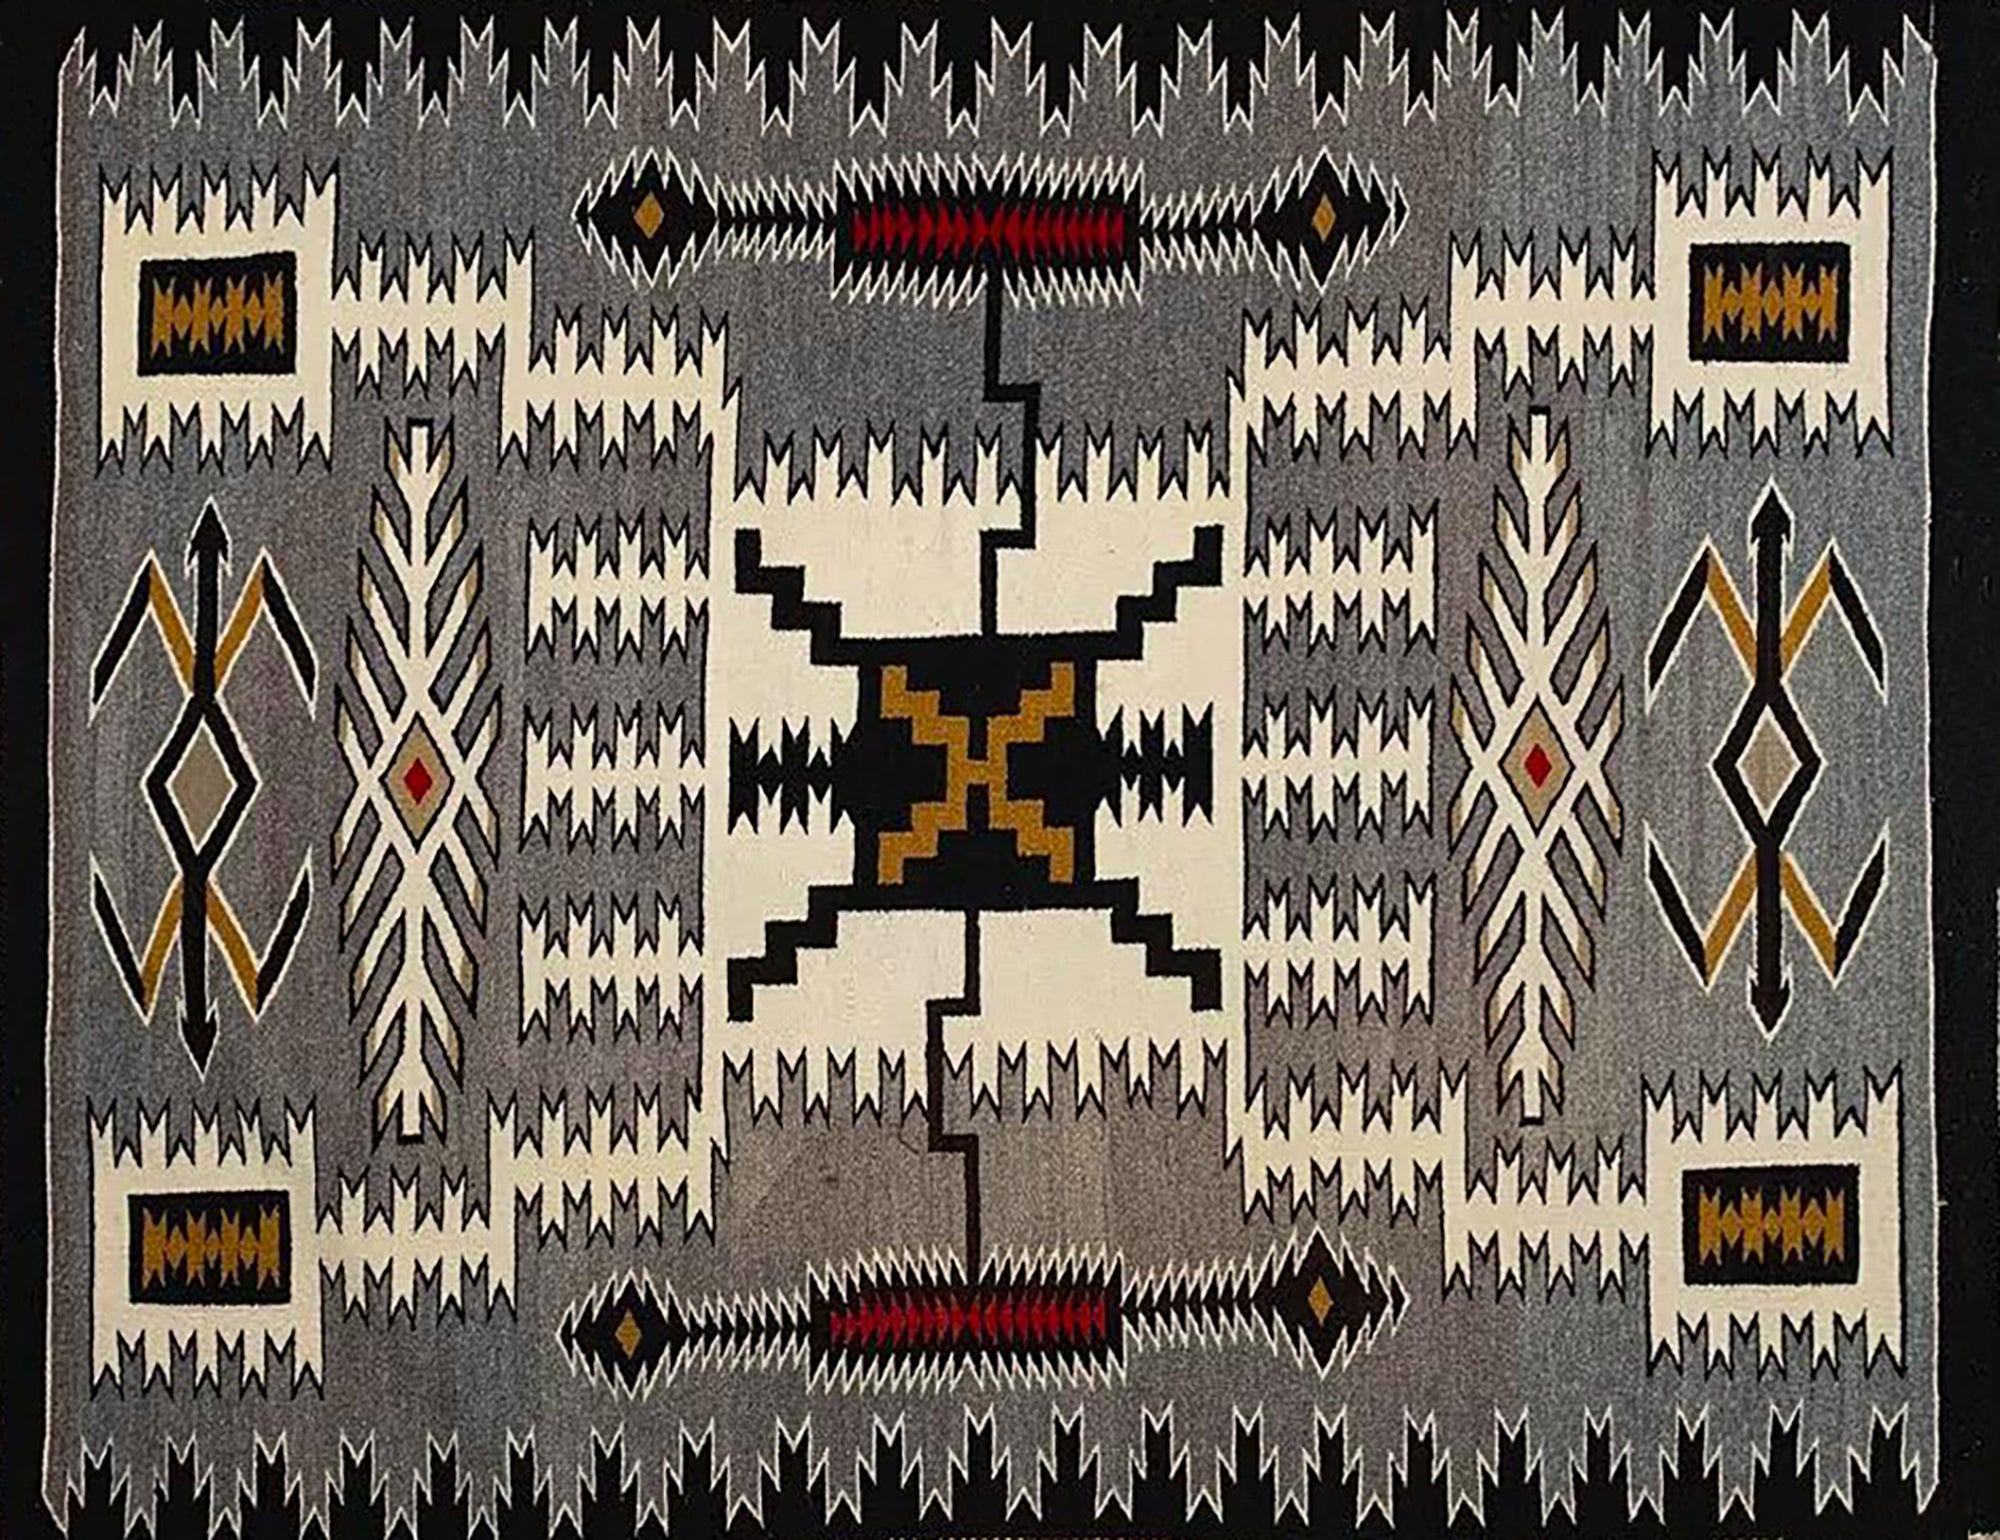 Vintage Navajo Rug - Storm Pattern